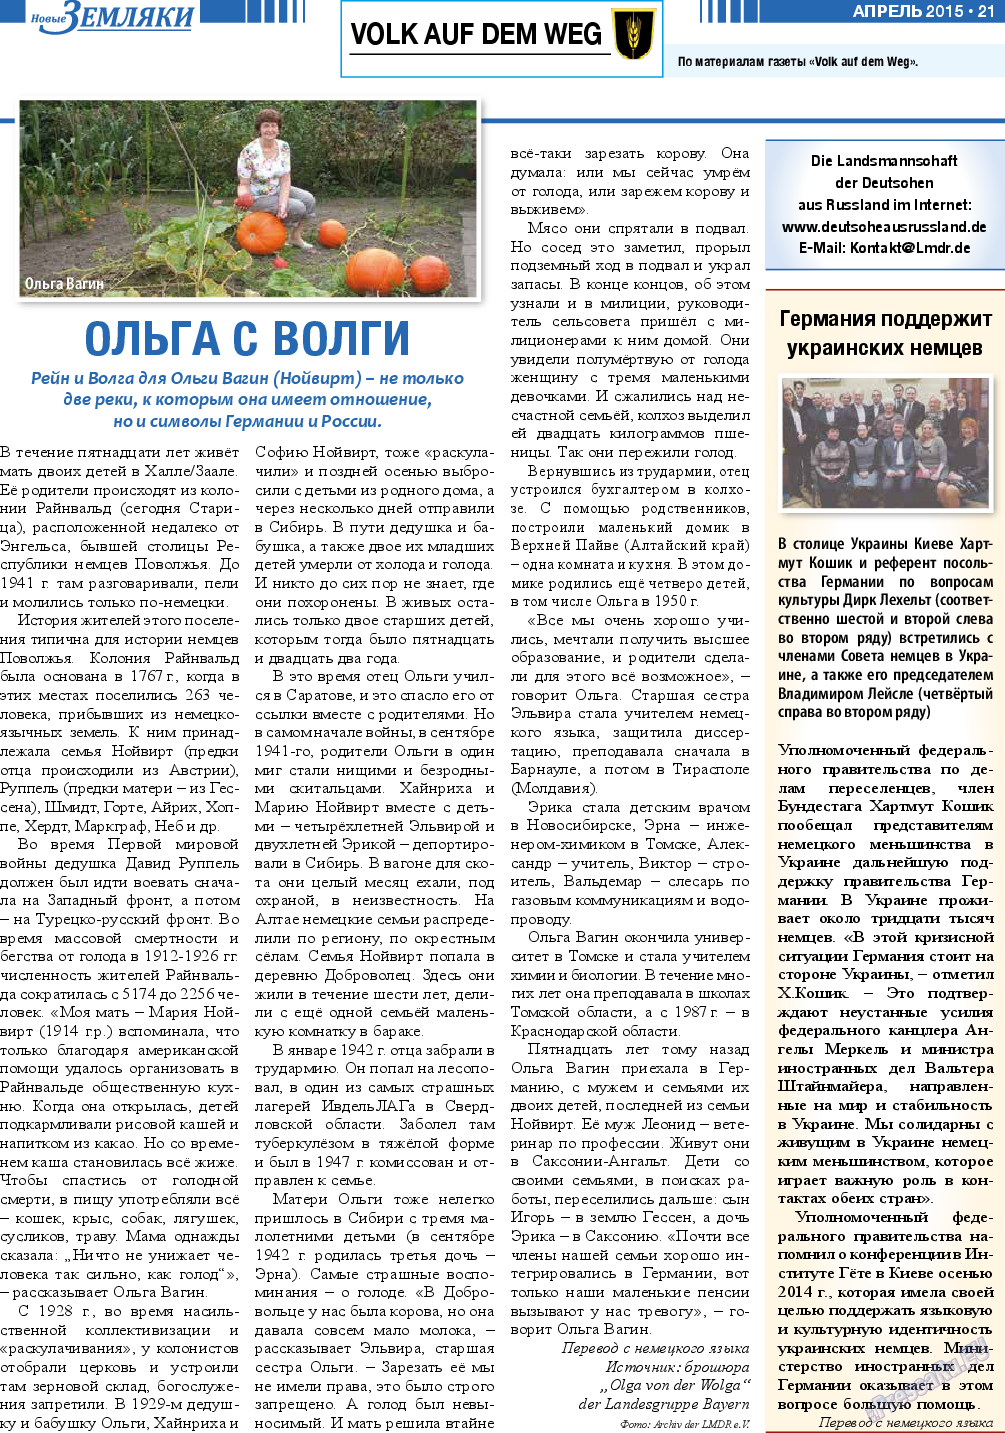 Новые Земляки, газета. 2015 №4 стр.21